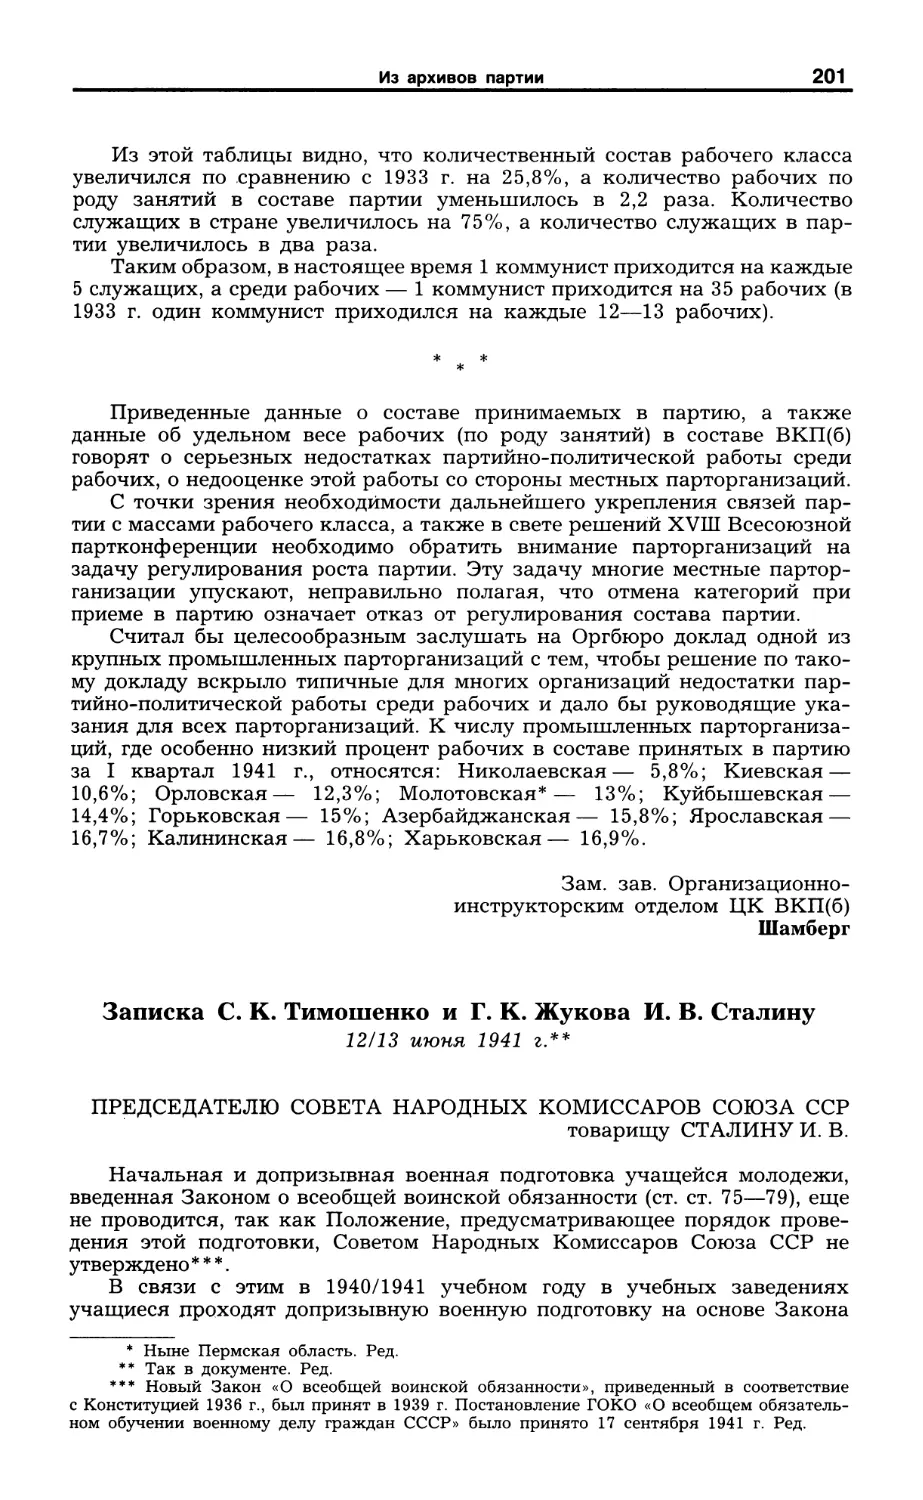 Записка С. К. Тимошенко и Г. К. Жукова И. В. Сталину. 12/13 июня 1941 г